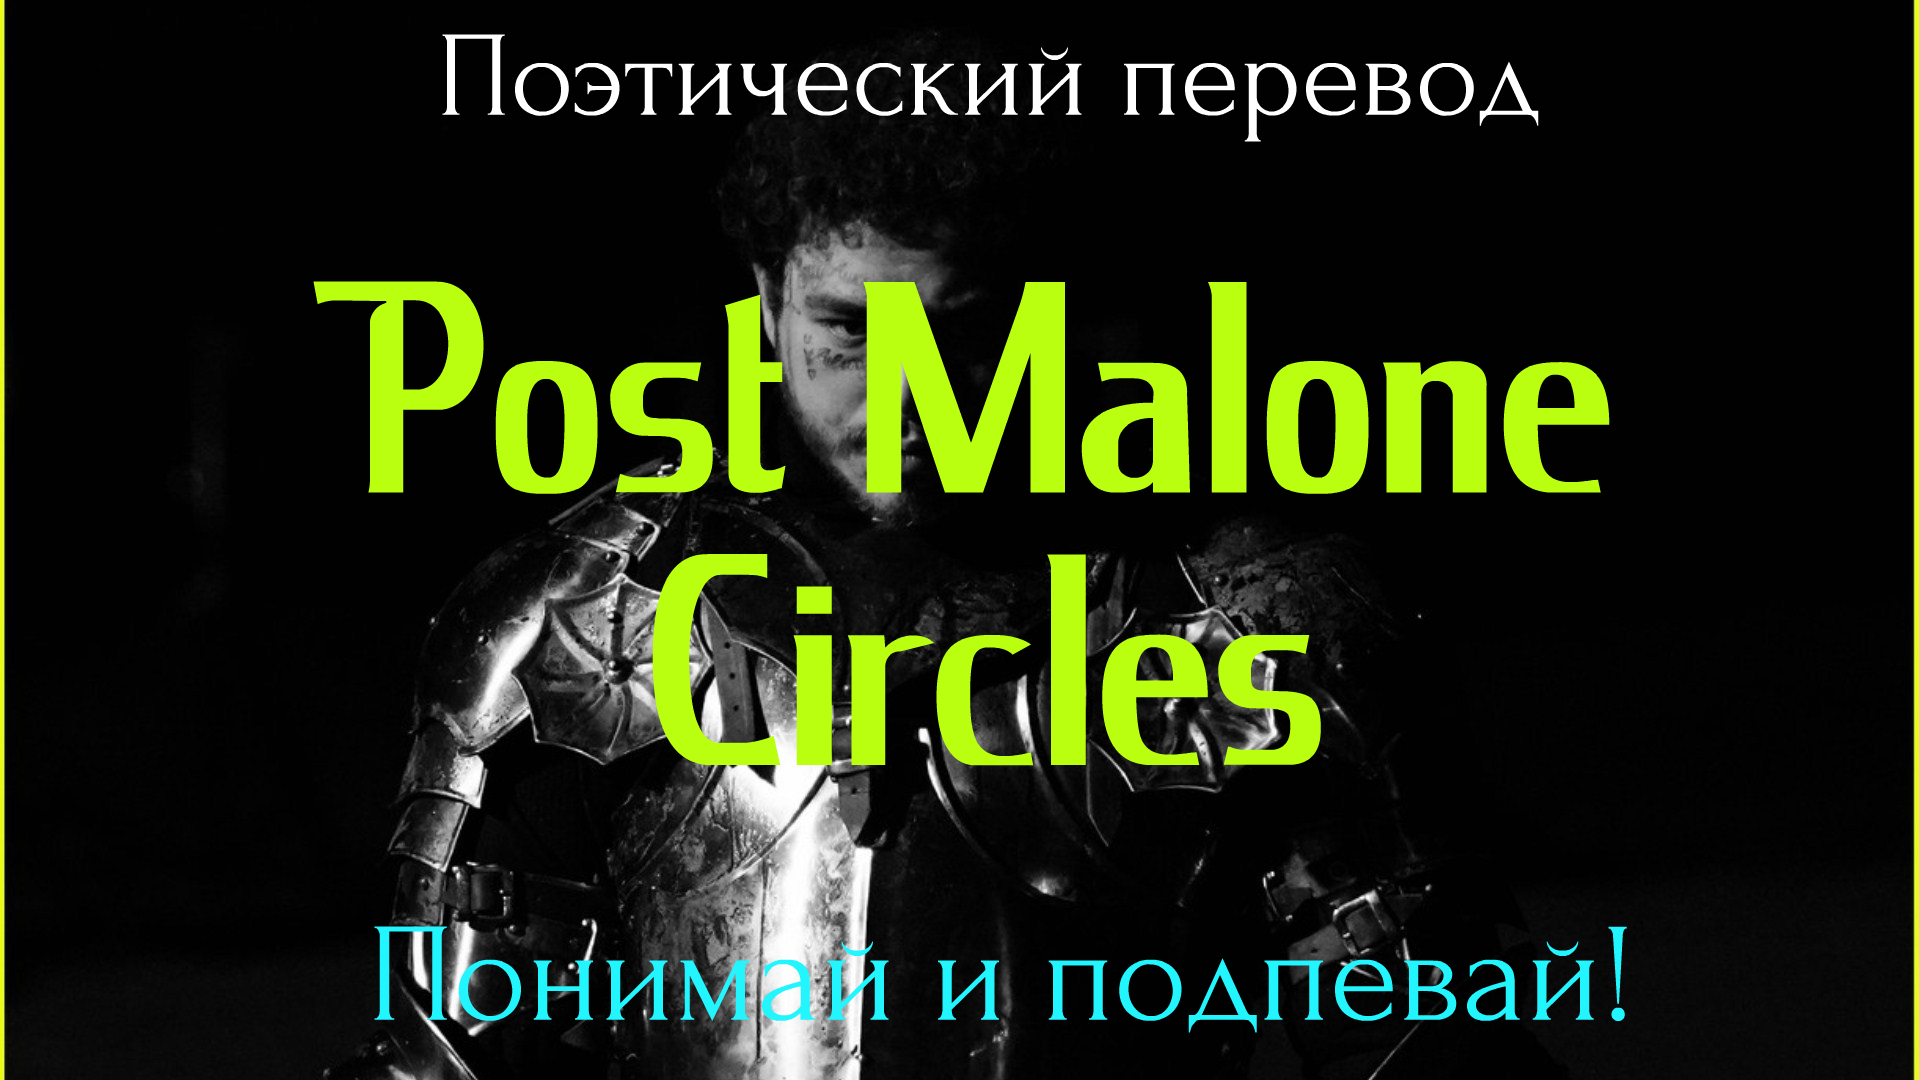 Песня posted перевод. Post Malone circles. Post Malone circles перевод. Post Malone перевод песни. Перевод песни circles Post.